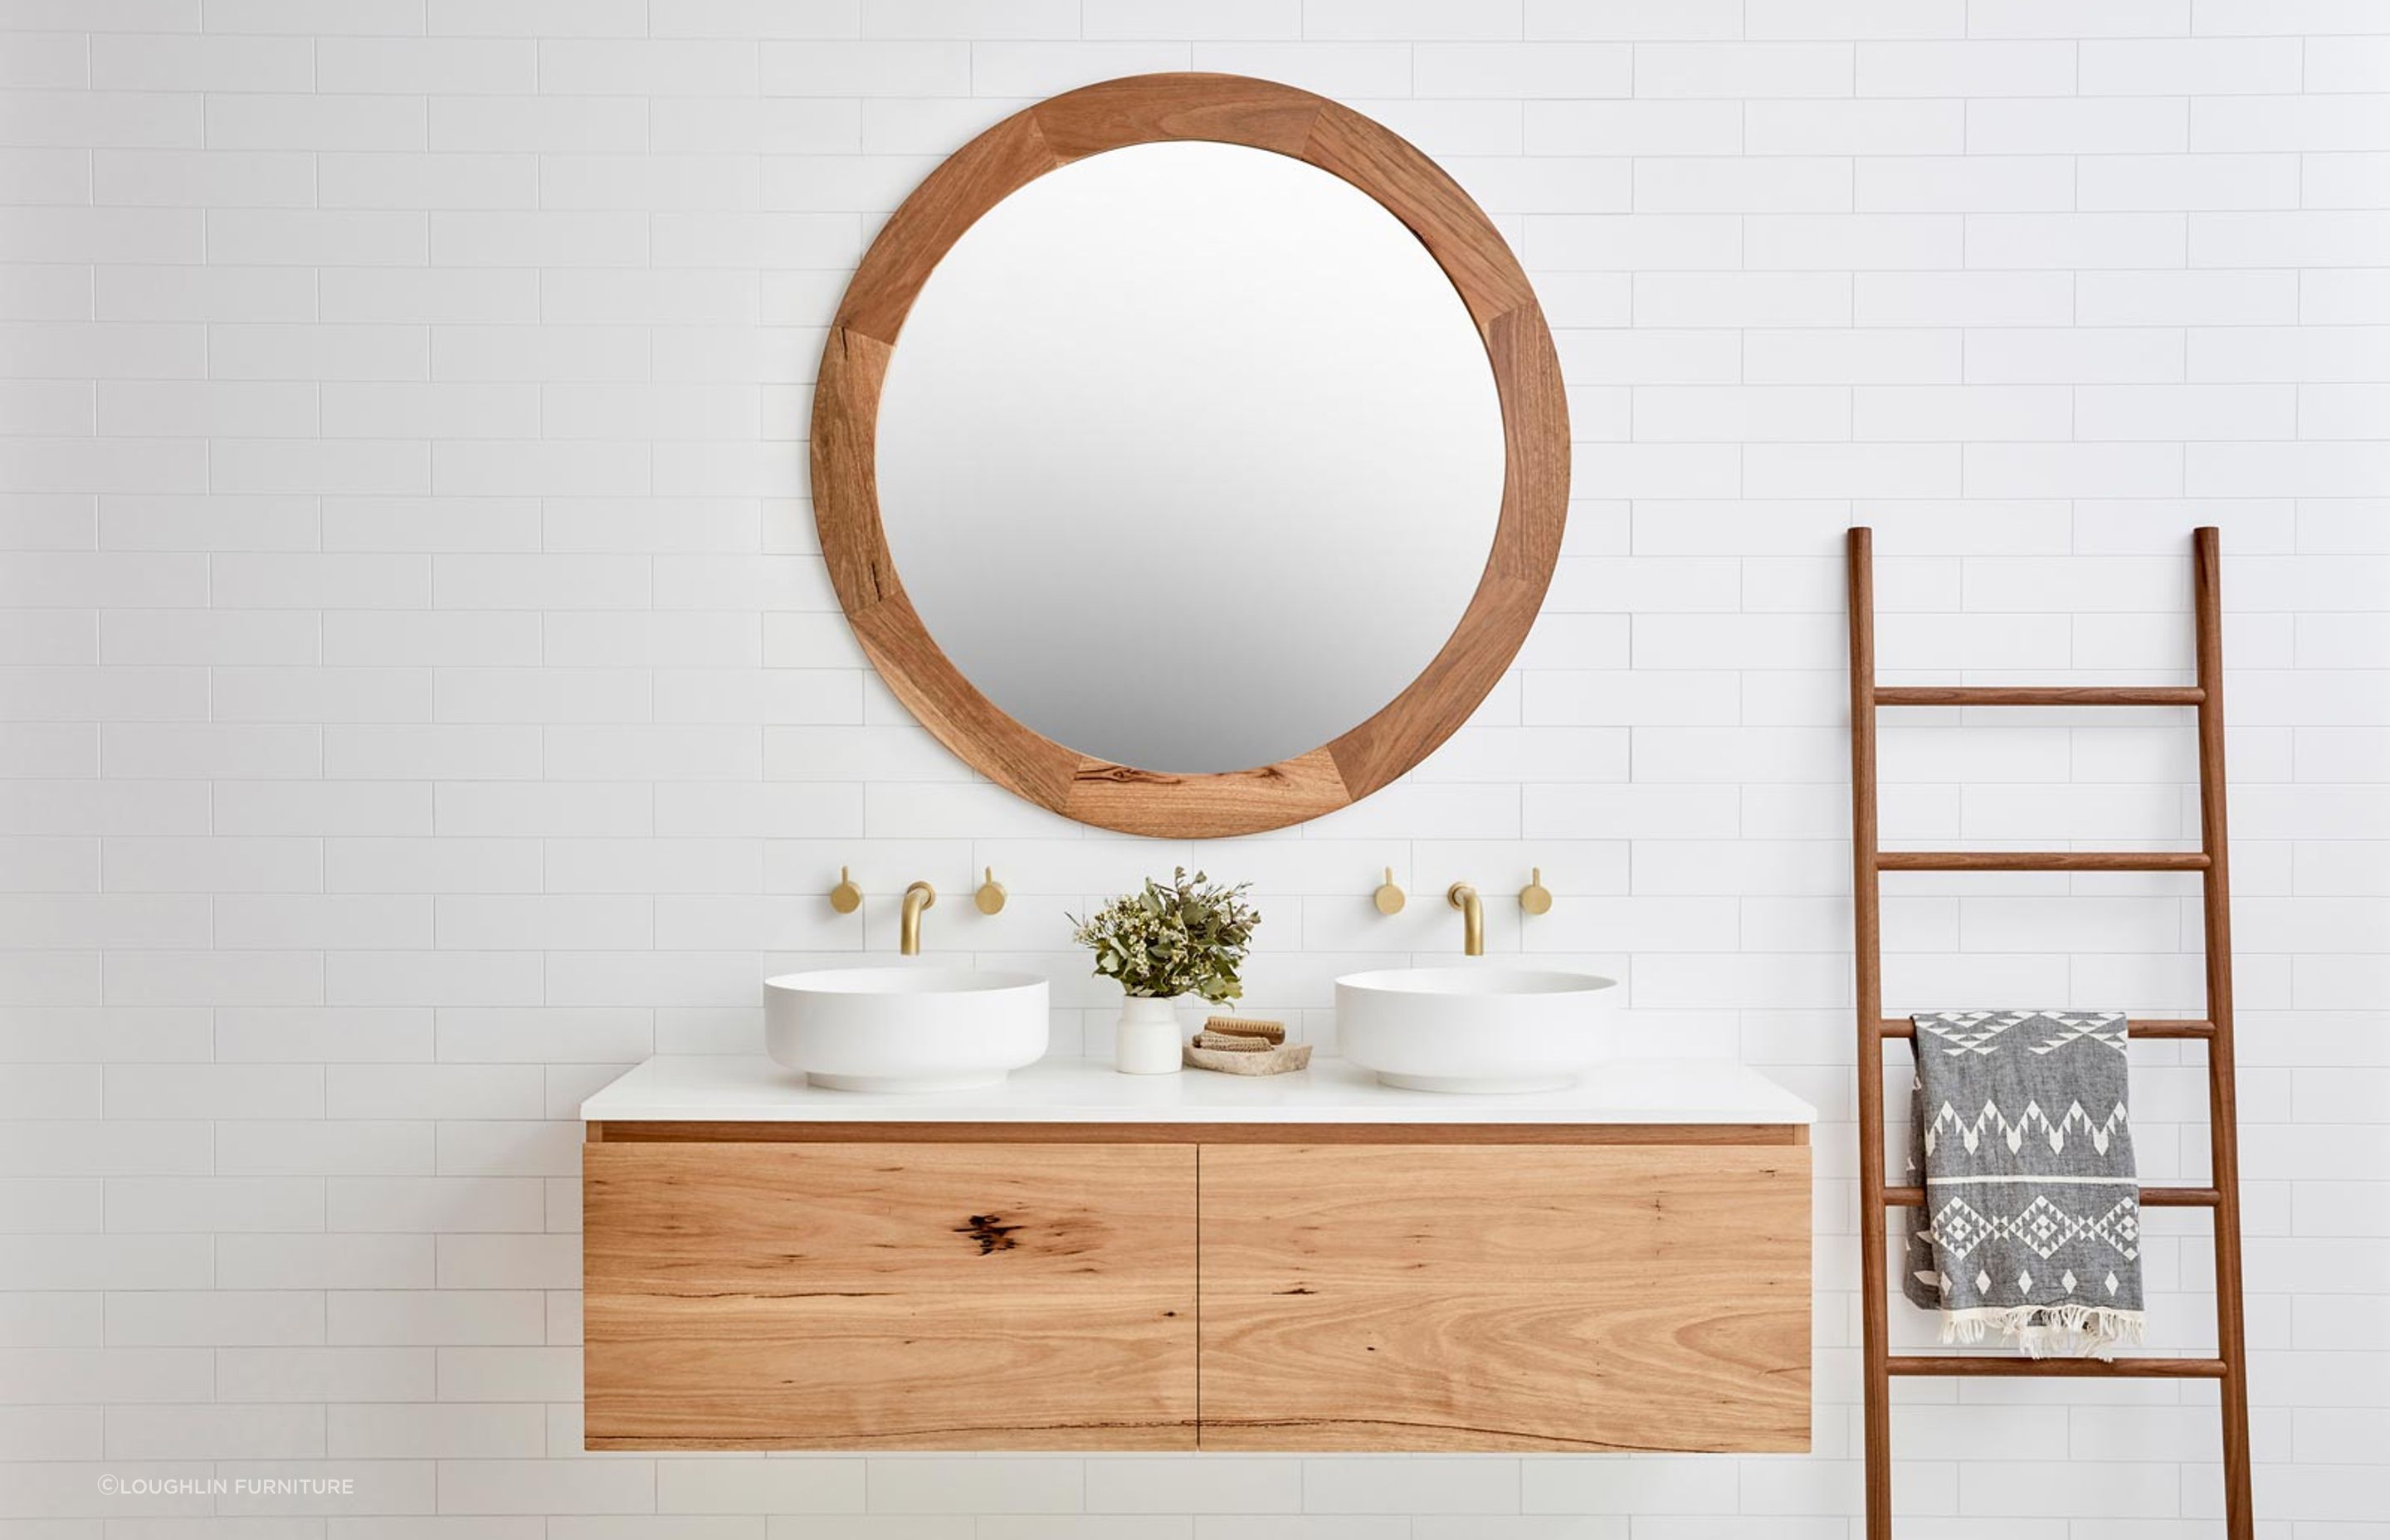 Wood framed bathroom mirrors look great in coastal bathrooms. Featured product: Ballina Mirror